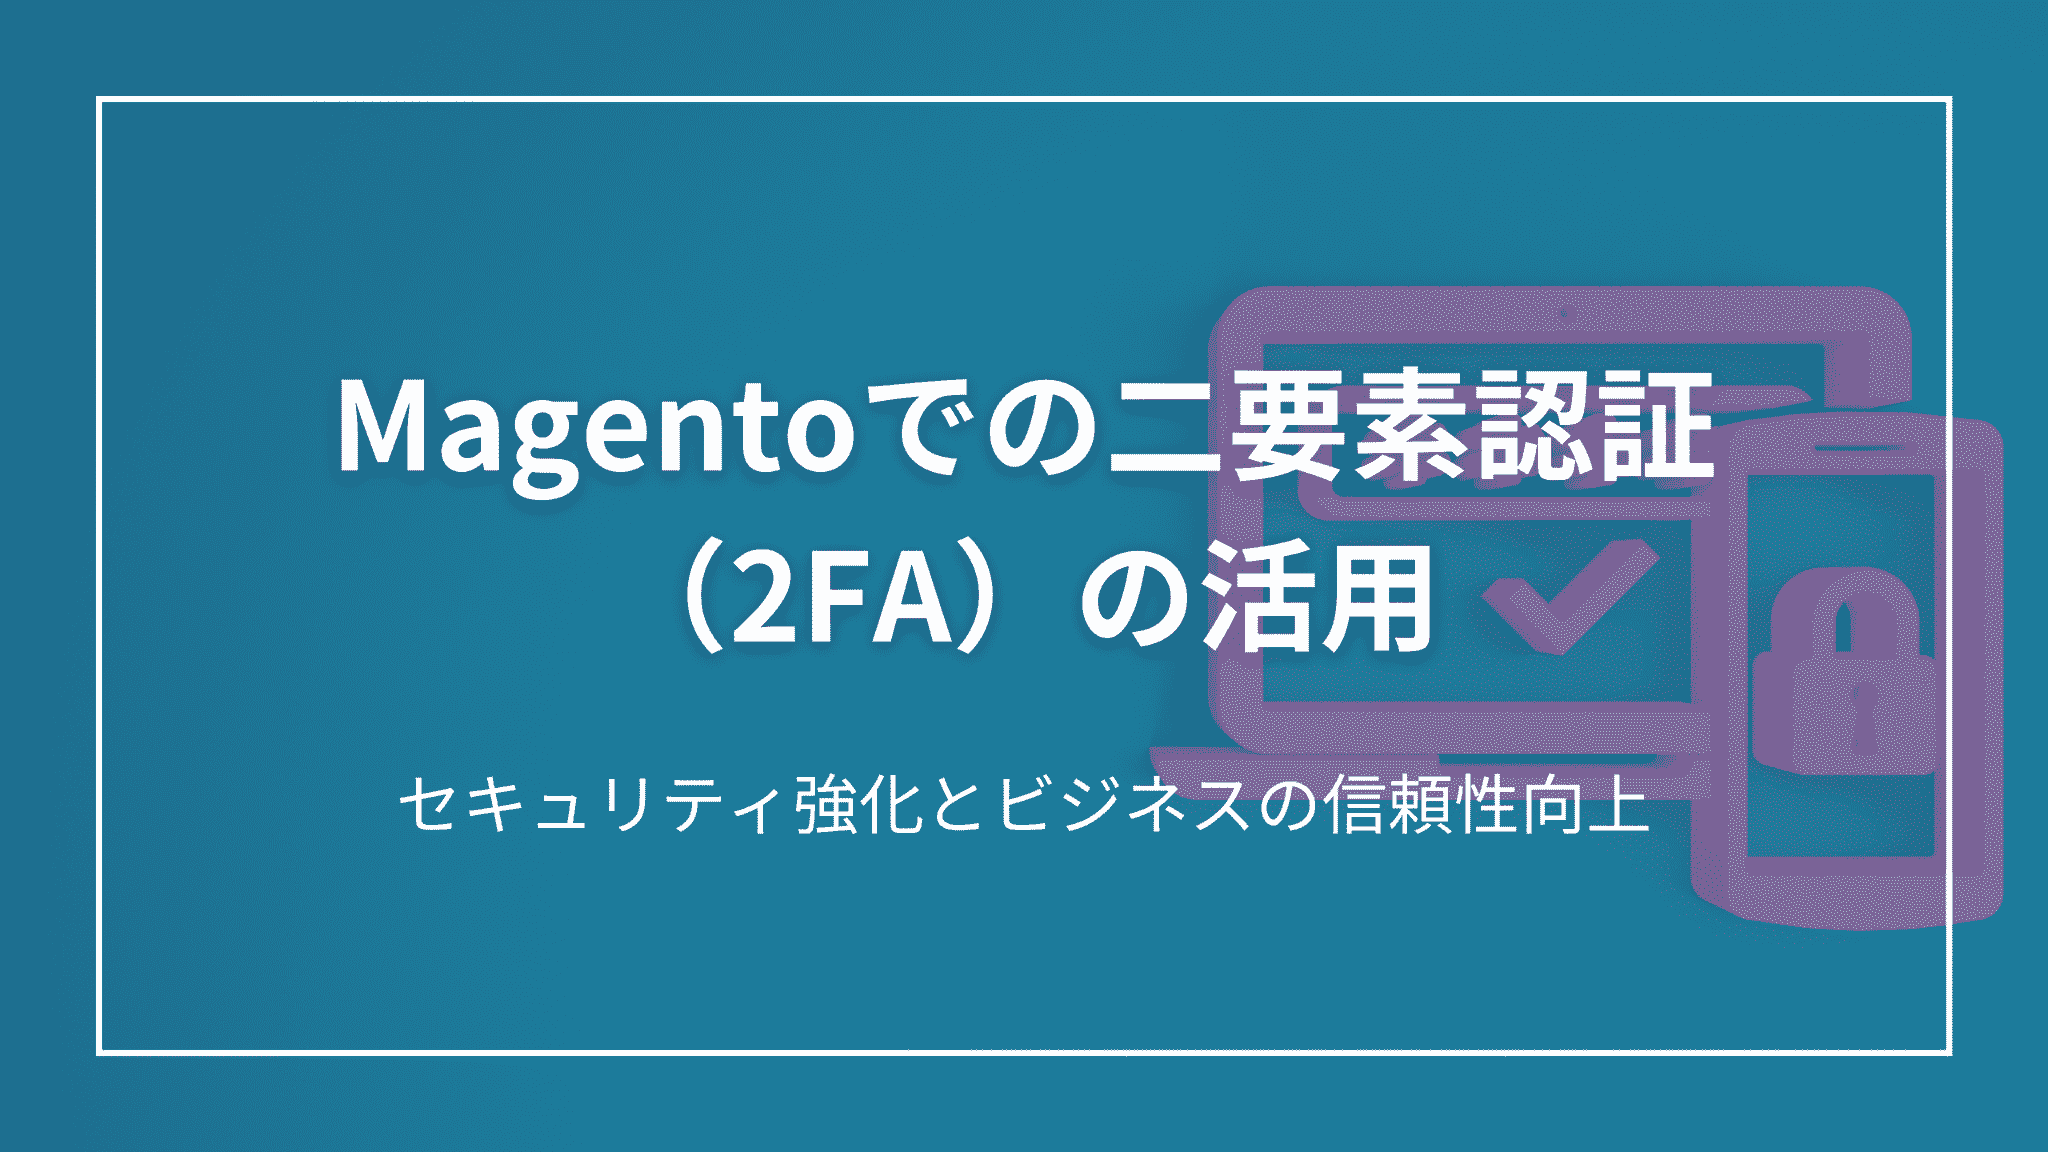 Magentoでの二要素認証（2FA）の活用: セキュリティ強化とビジネスの信頼性向上